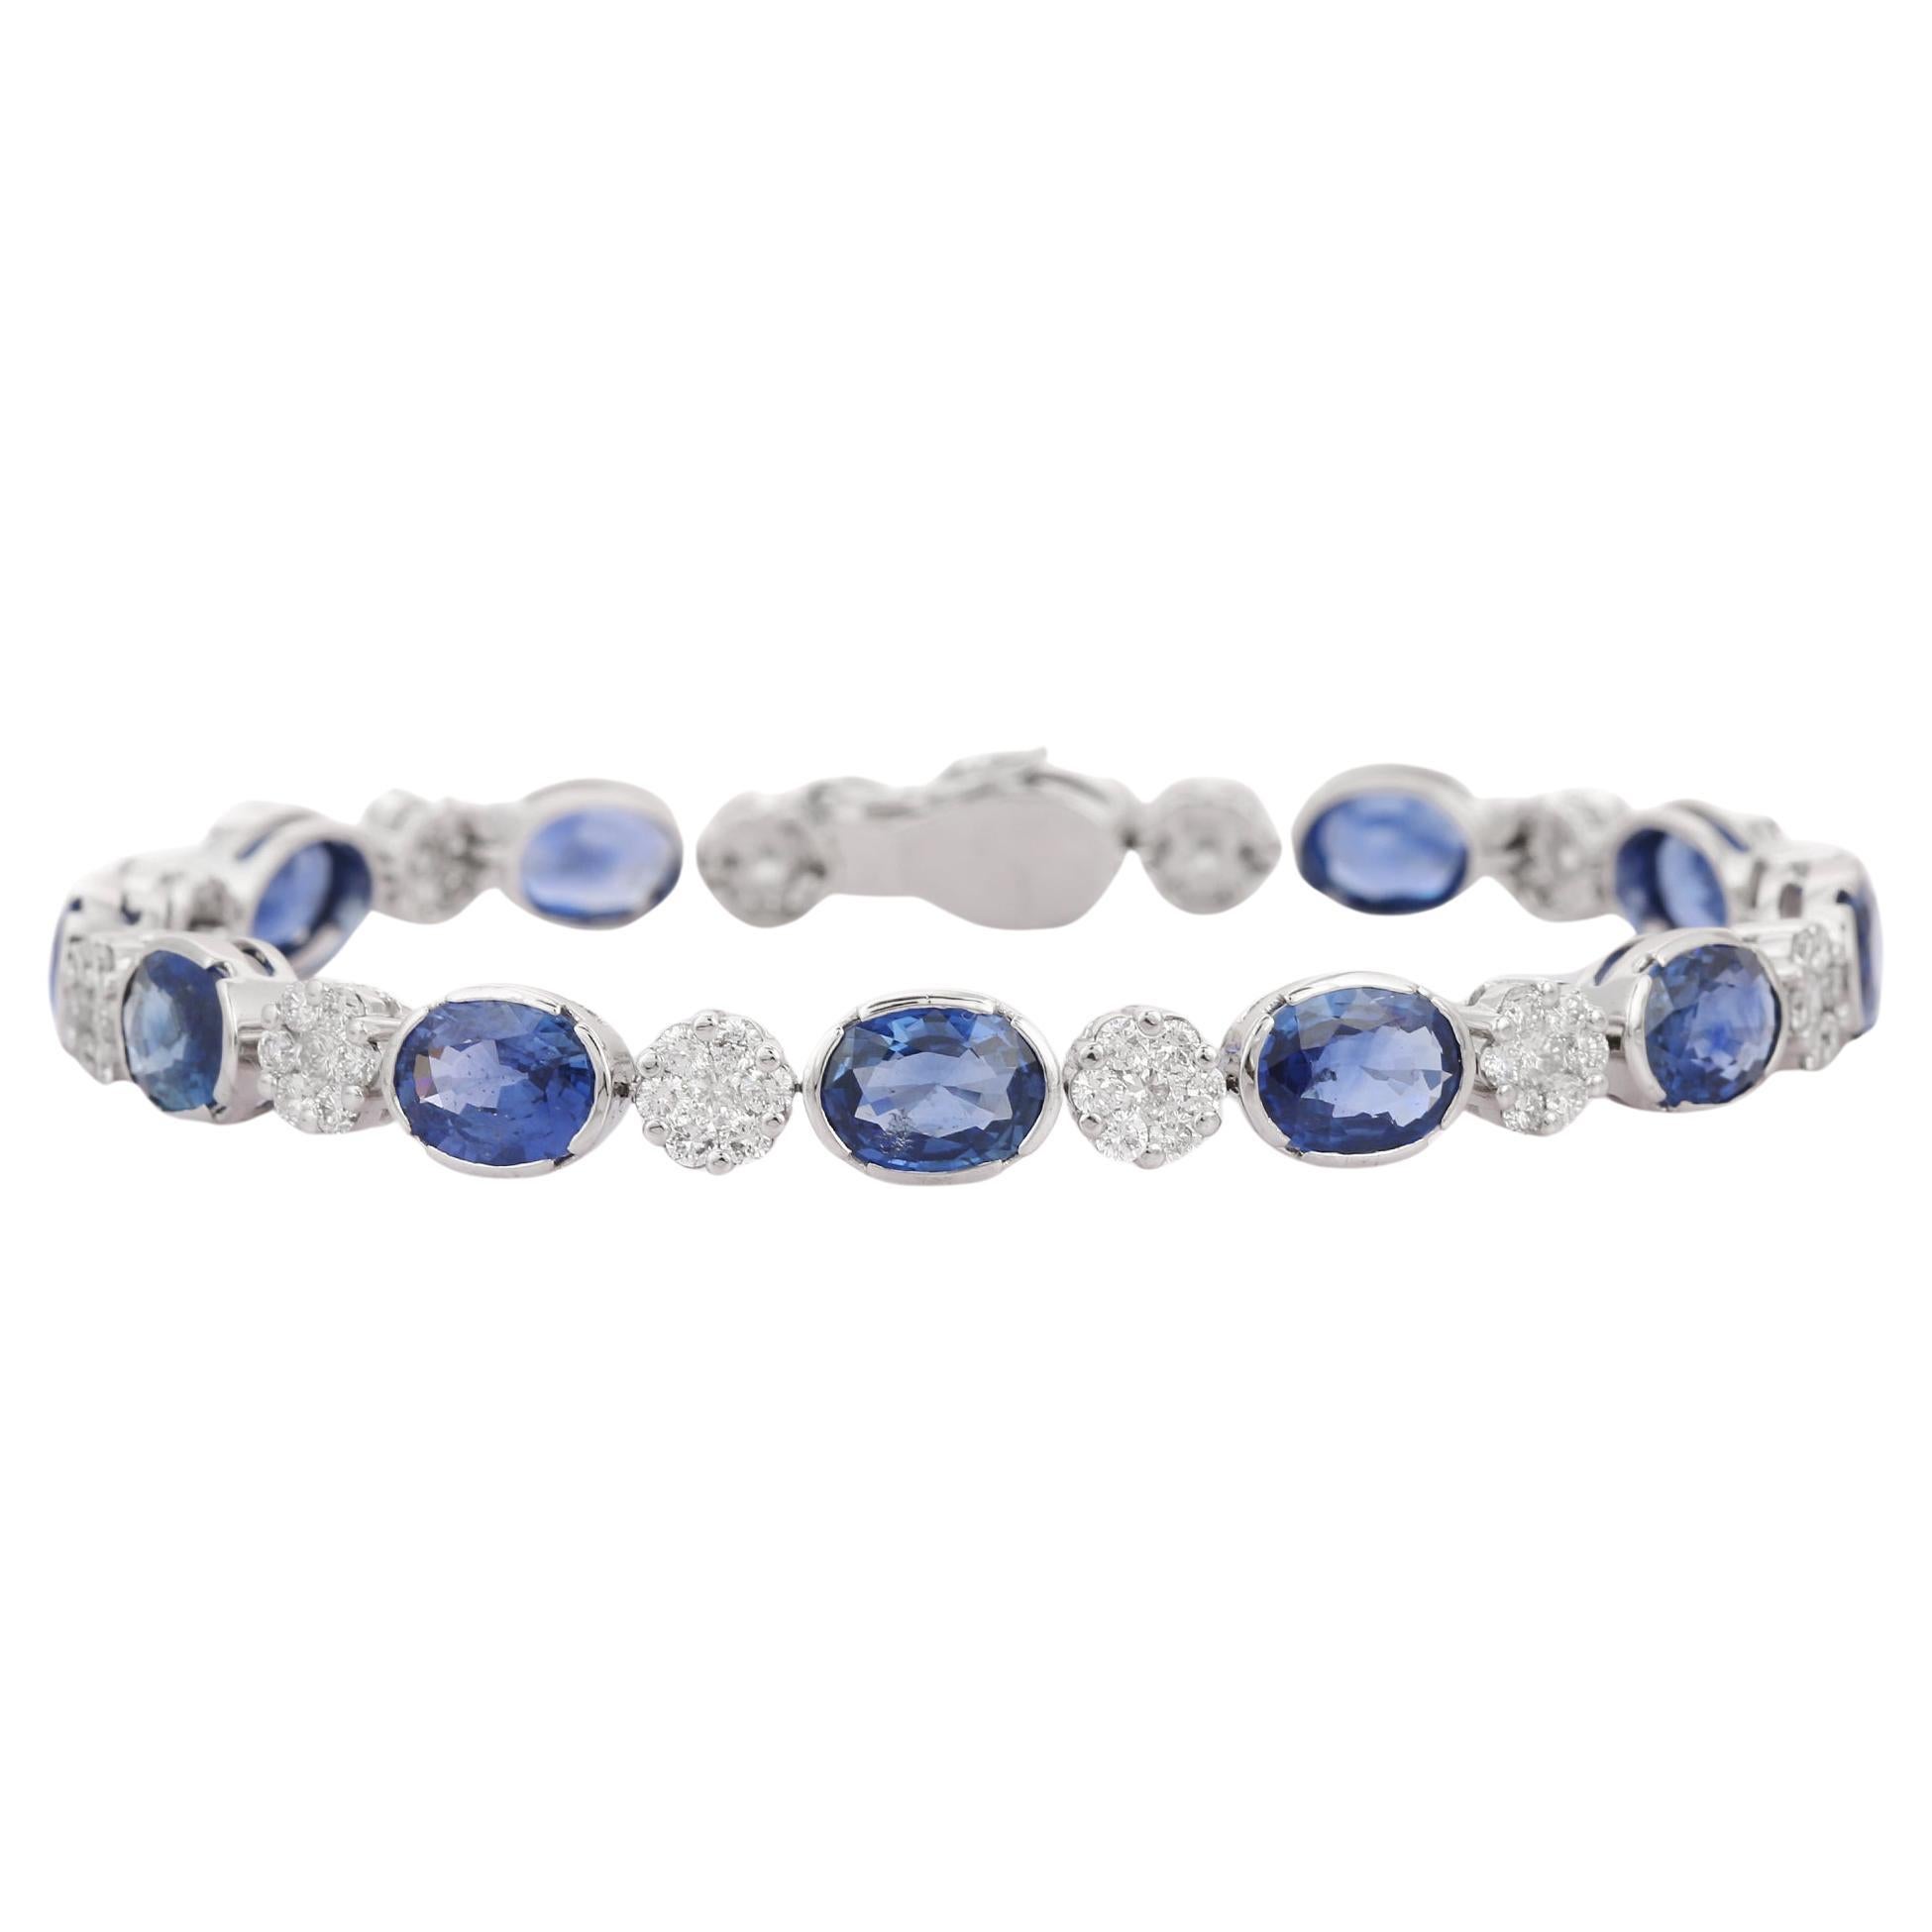 Blue Sapphire and Flower Diamond Tennis Bracelet in 18K White Gold